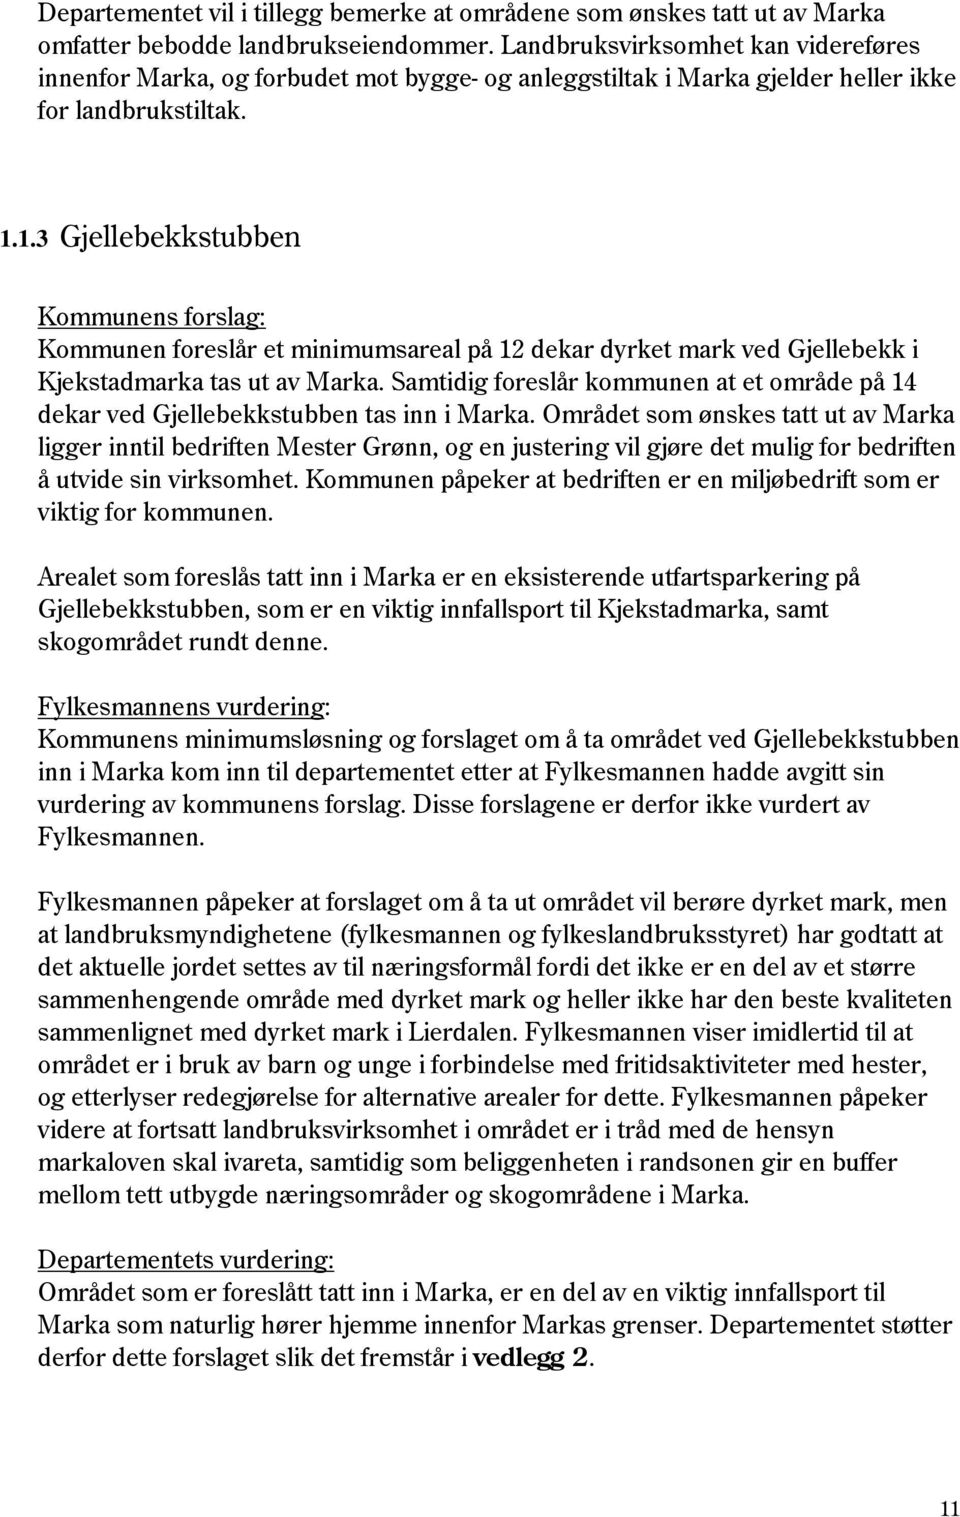 1.3 Gjellebekkstubben Kommunen foreslår et minimumsareal på 12 dekar dyrket mark ved Gjellebekk i Kjekstadmarka tas ut av Marka.